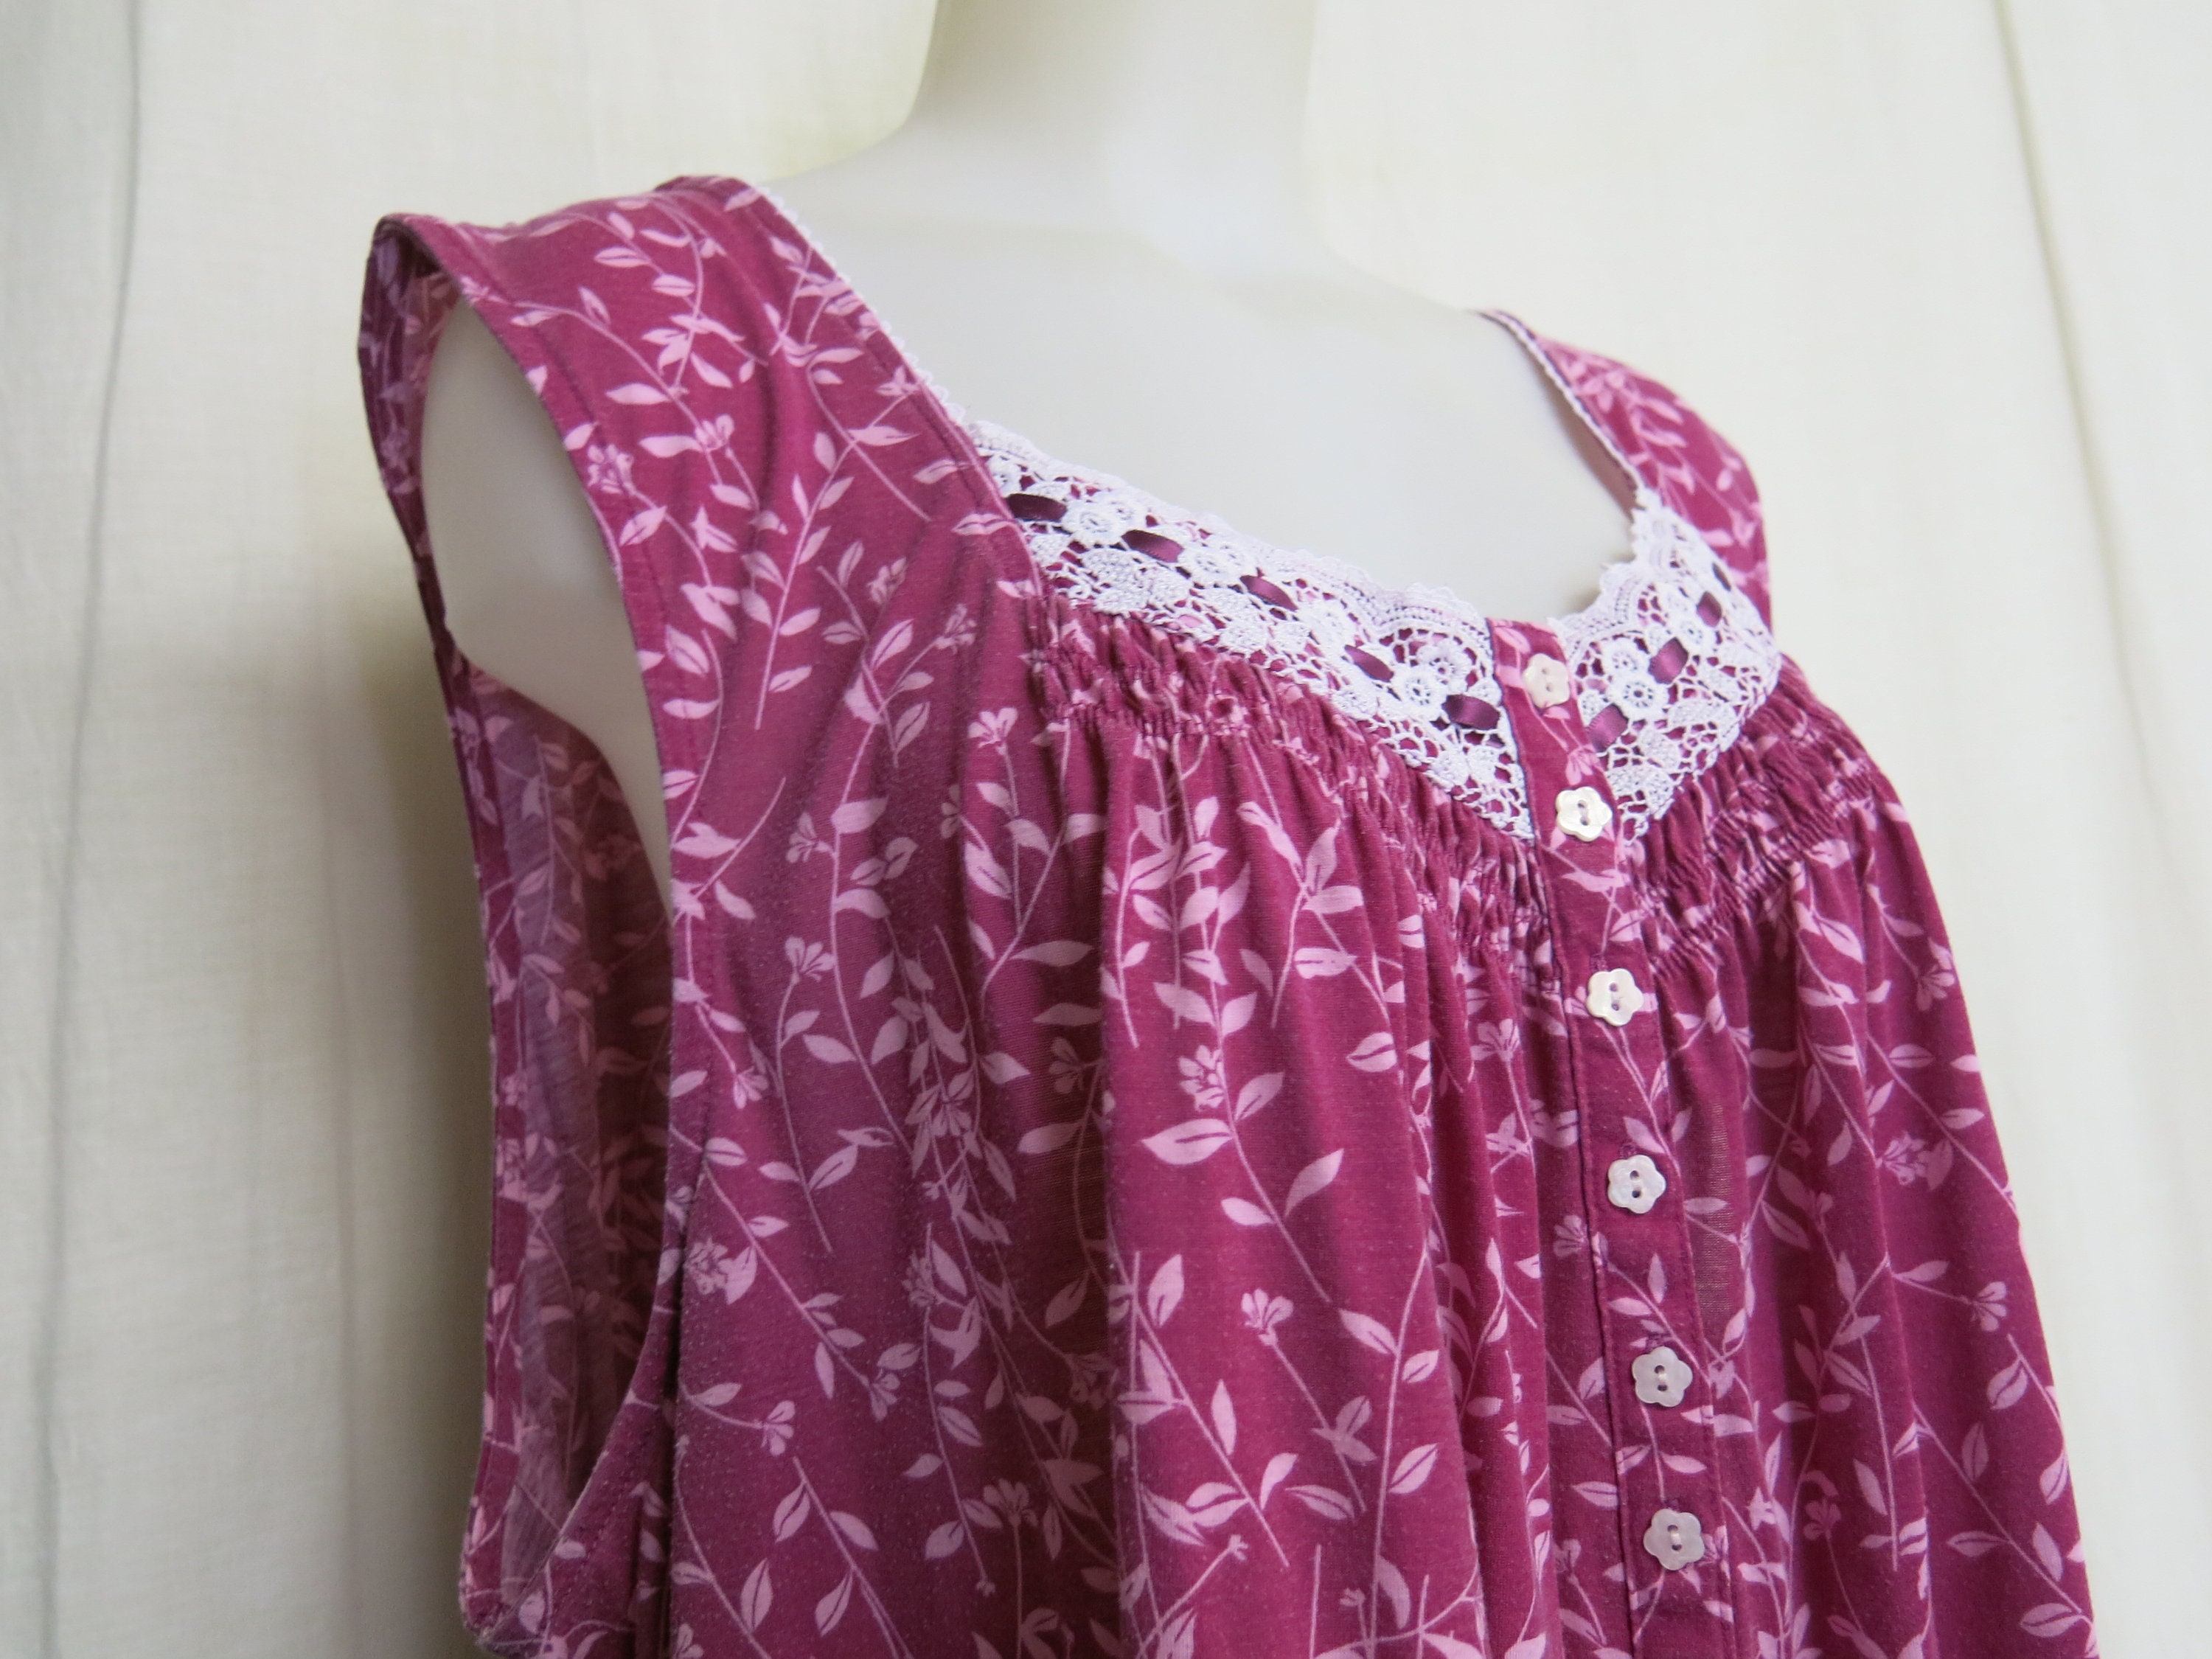 DAGSMEJAN STAY WARM | Elegant merino wool nightgown